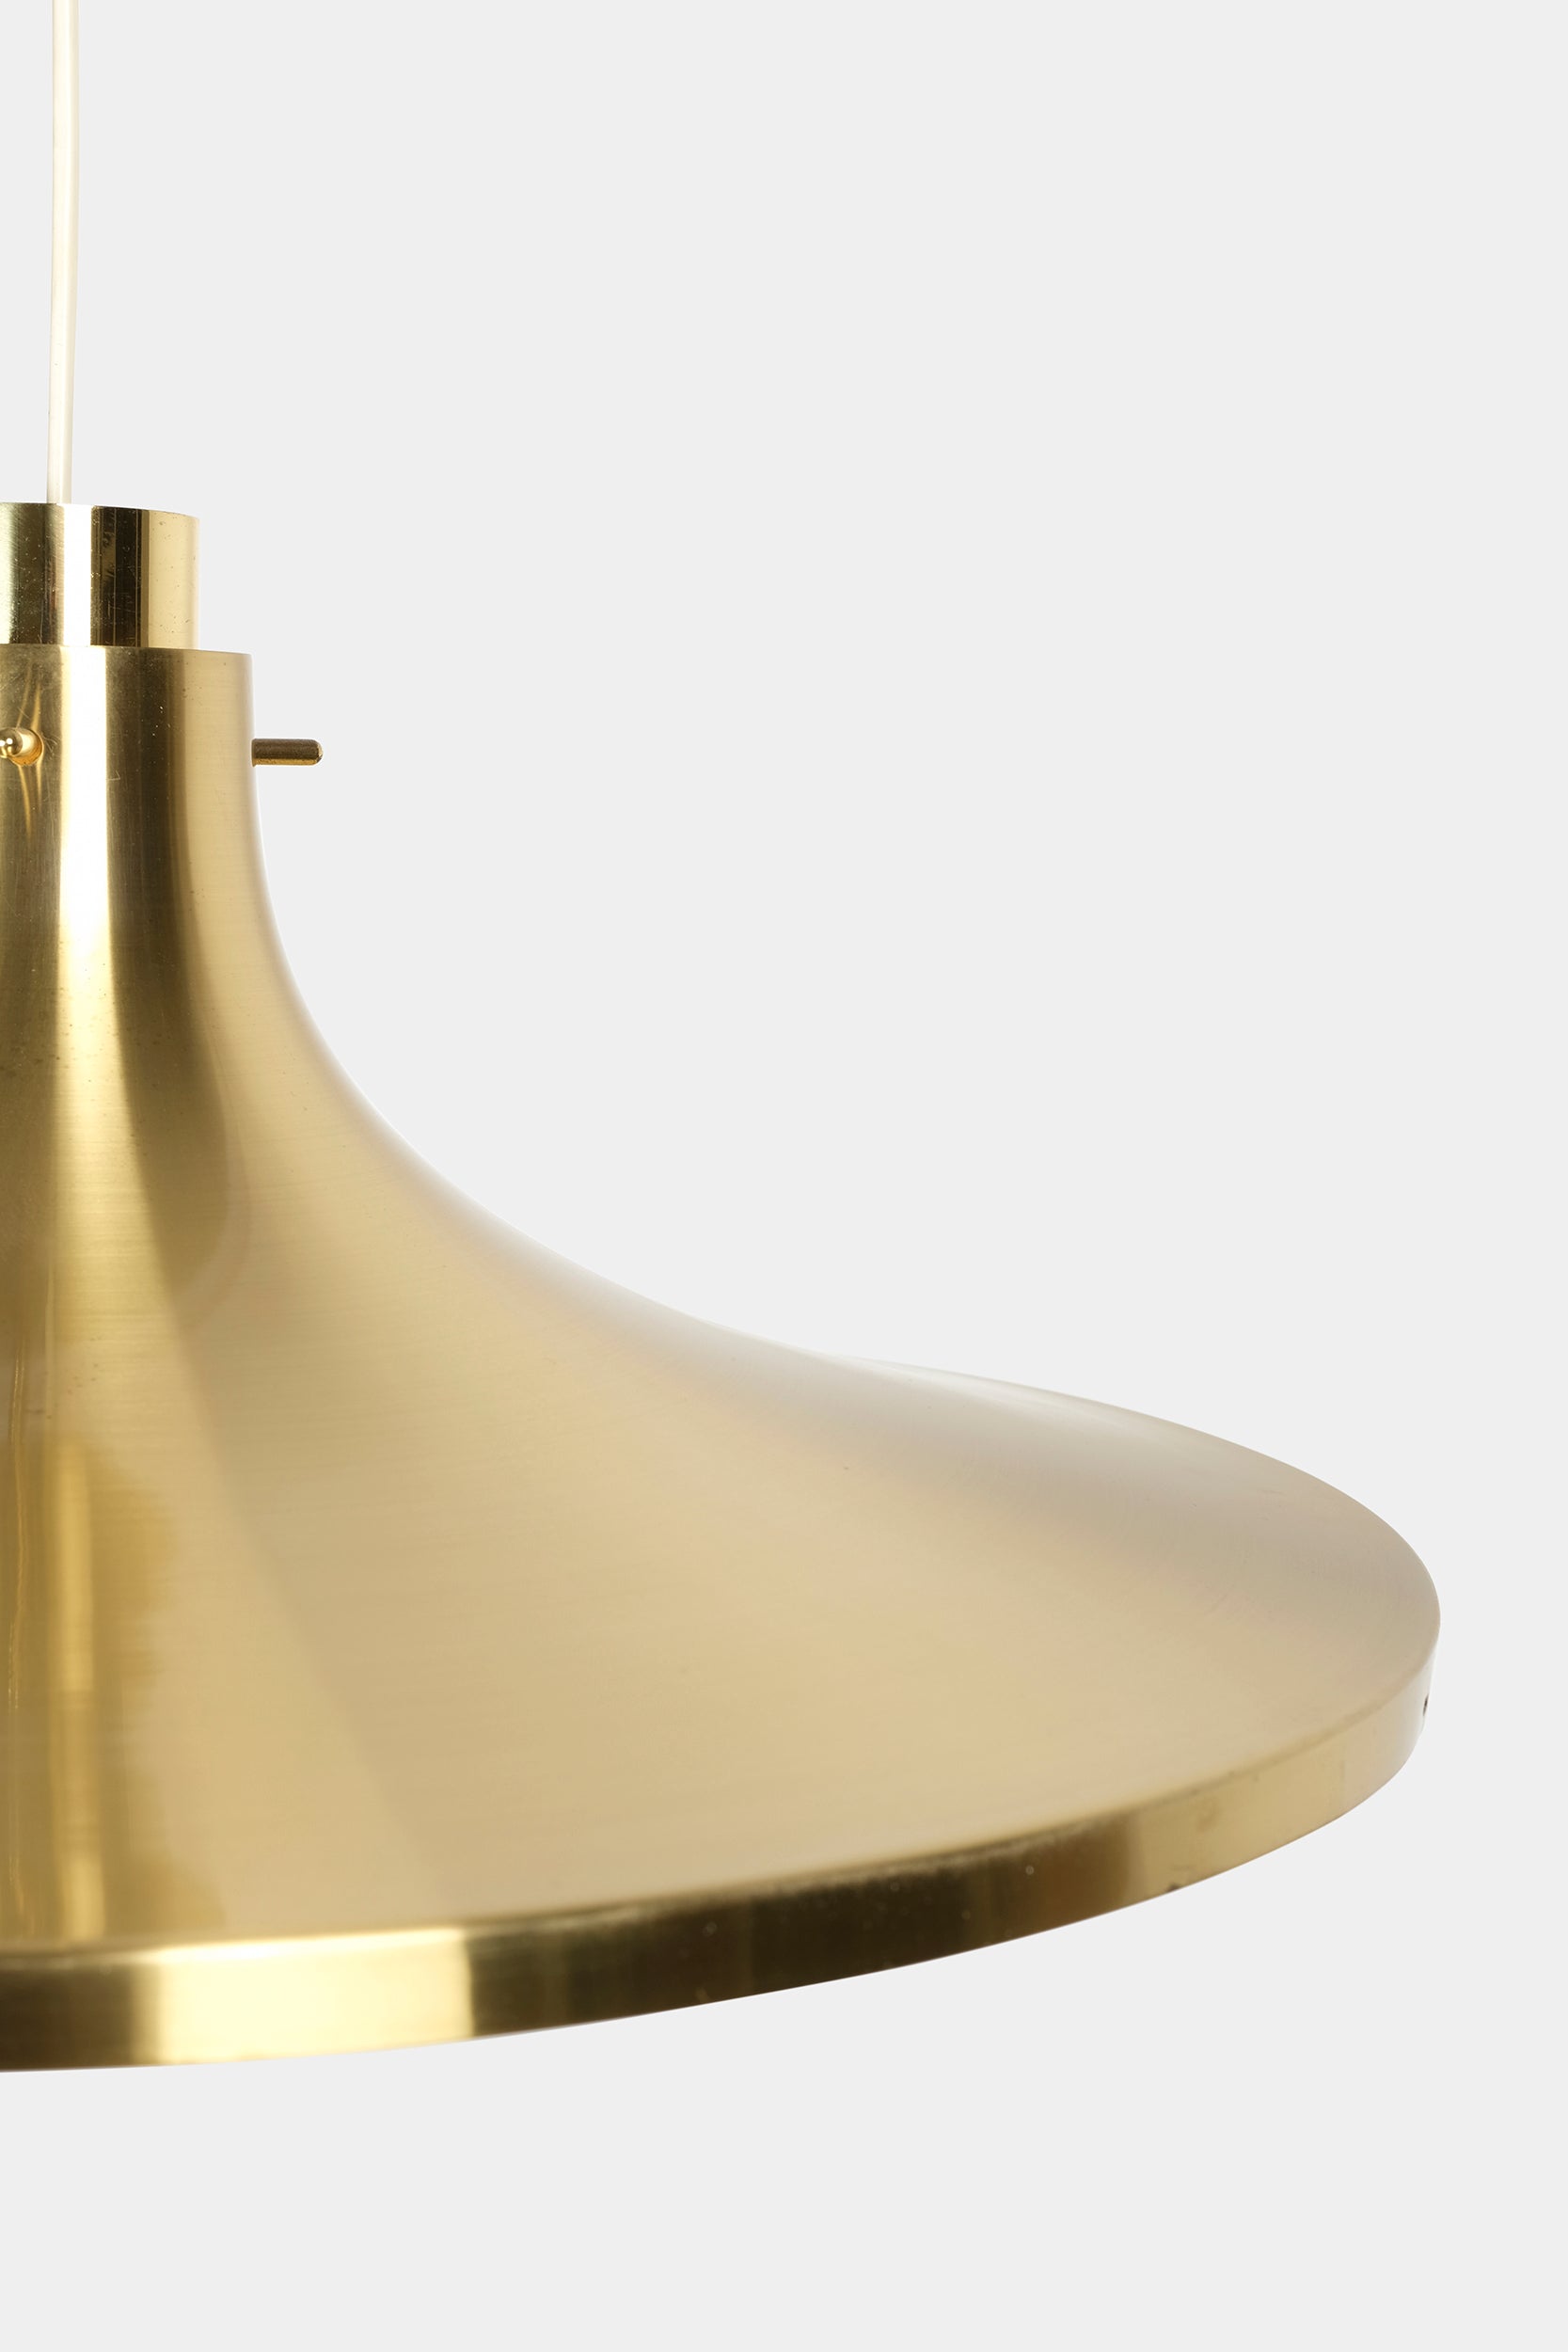 Hans Agne Jakobsson, Brass Ceiling Lamp, Markaryd, Sweden, 60's